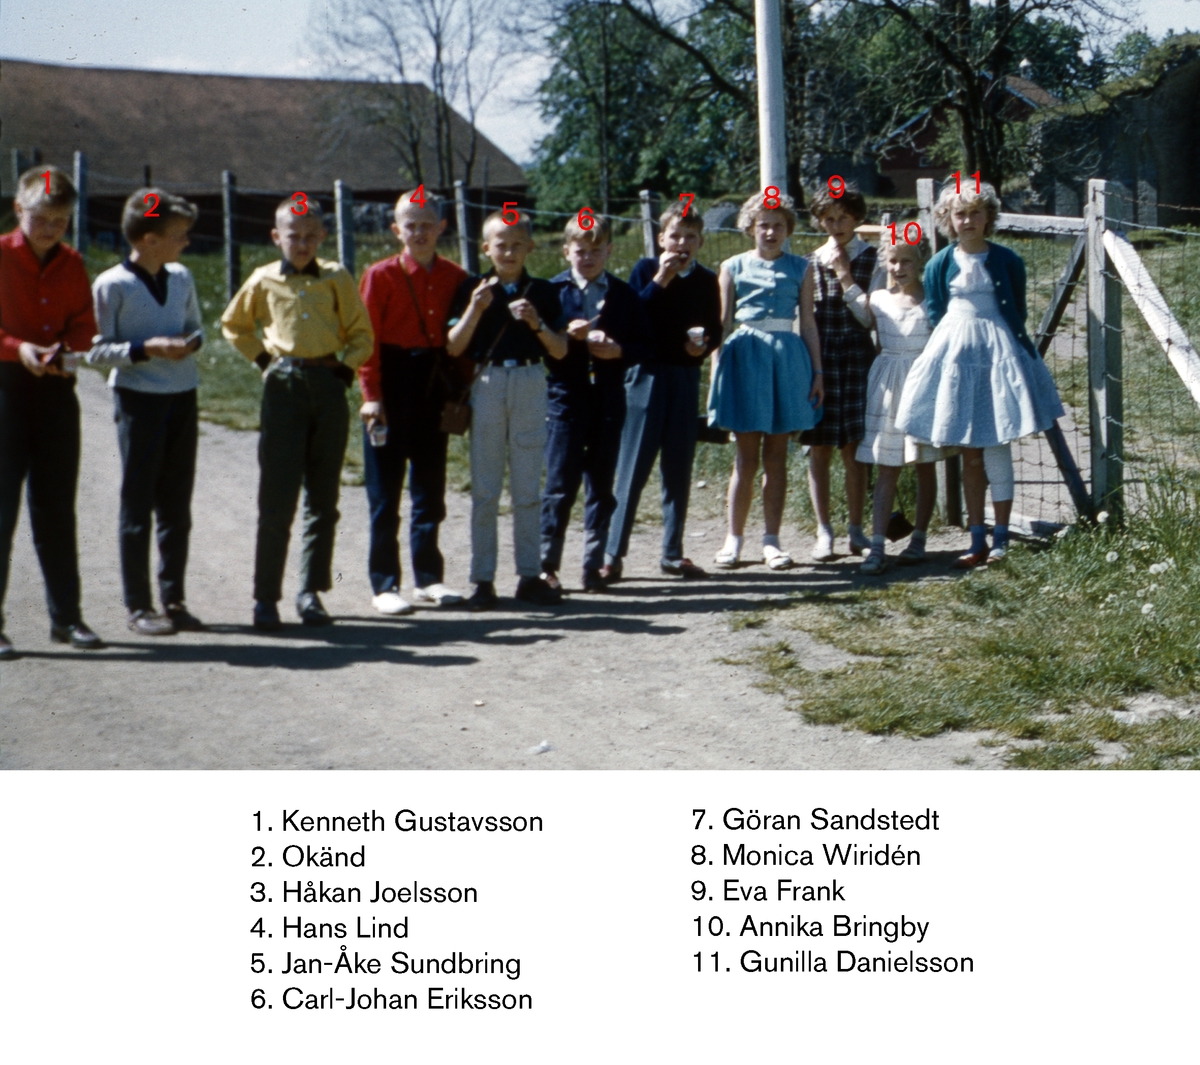 År 1959 på våren är klass 4 från Österängsskolan i Jönköping på skolresa till Vadstena tillsammans med sin lärare Göte Ohlsson. Några elever på rad framför Alvastra kloster.
På Österängsskolan var det tradition att man i 4:an åkte till Vadstena och Omberg, i 5:an till Västergötland (Falbygden, Skara, Varnhem) och i 6:an en resa till glasbruk i Småland.